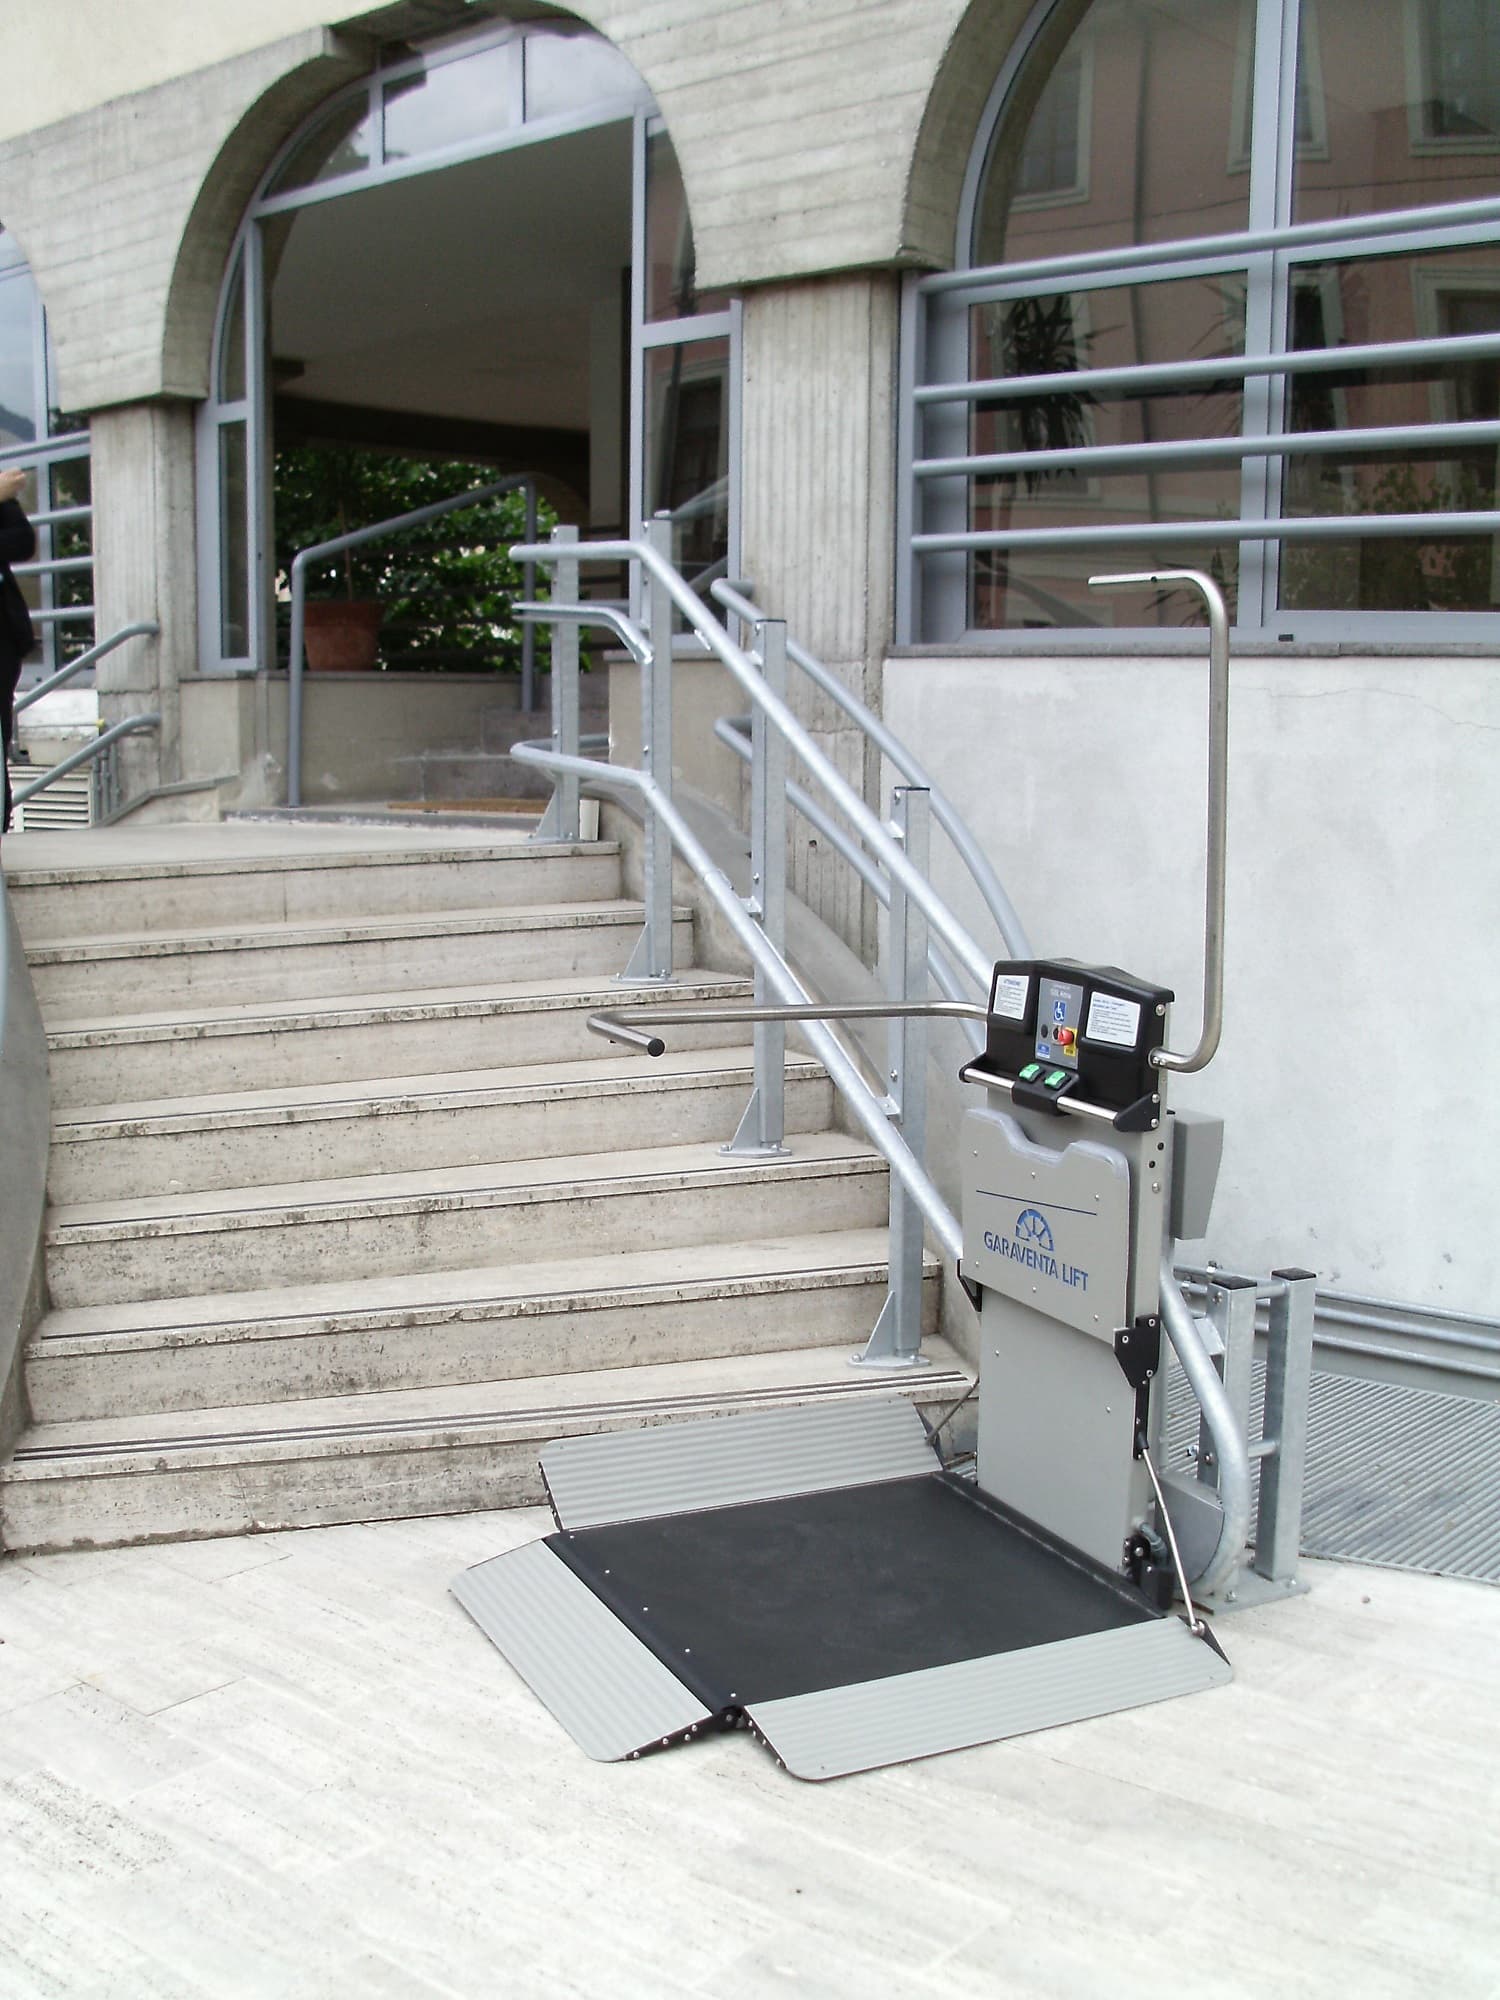 external-inclined-plaform-access-stair-lift.JPG